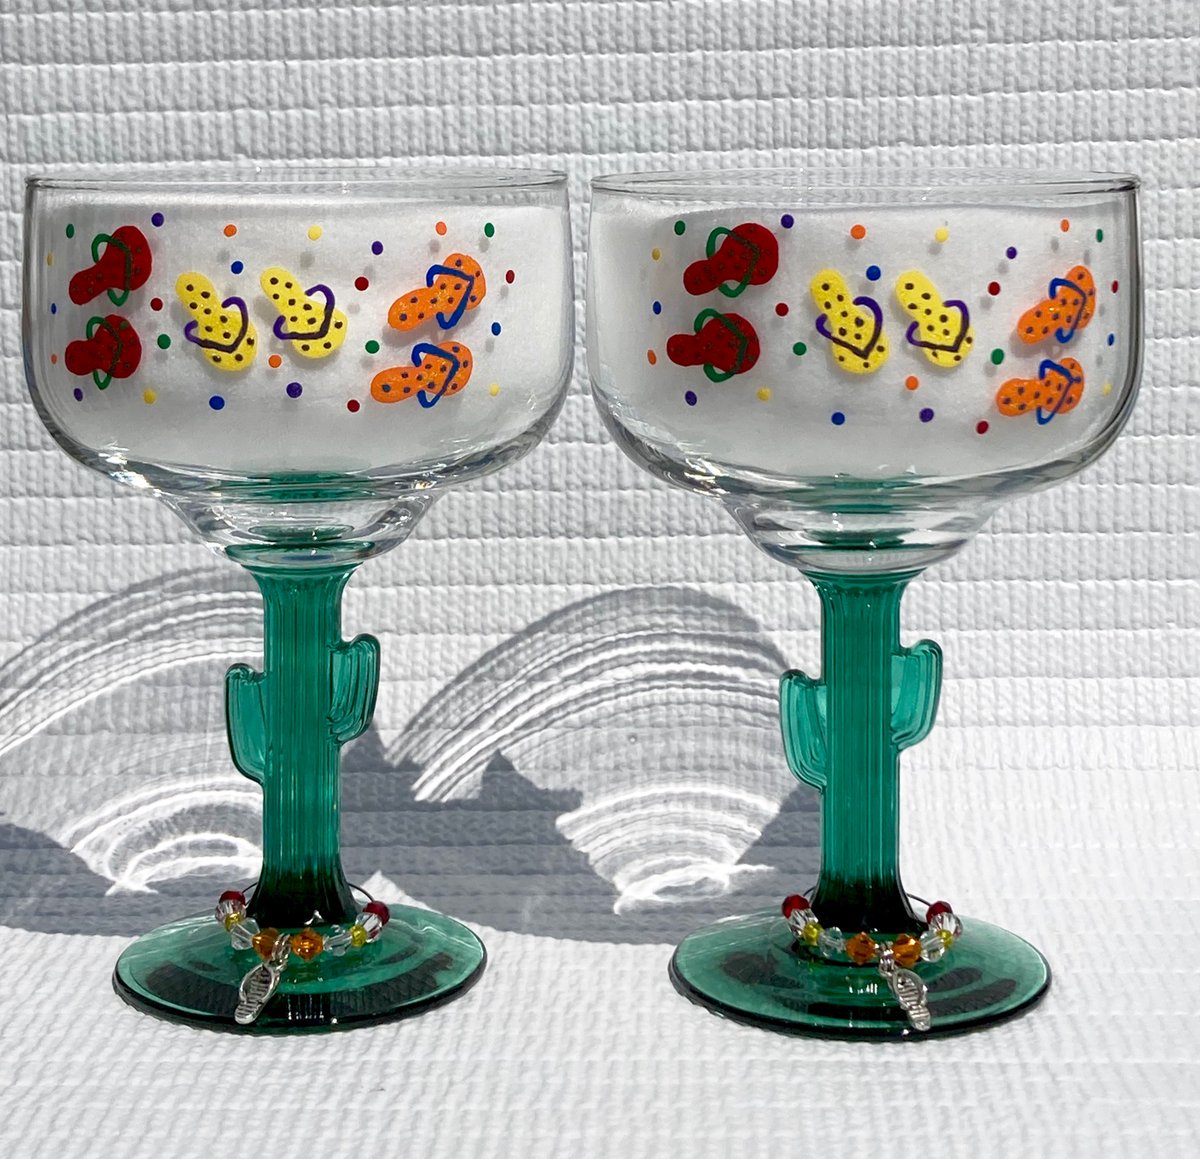 Fun Summer glasses etsy.com/listing/100500… #flipflops #margaritaglasses #cactusglasses #paintedflipflops #birthdaygift #giftsforher #beachhouse